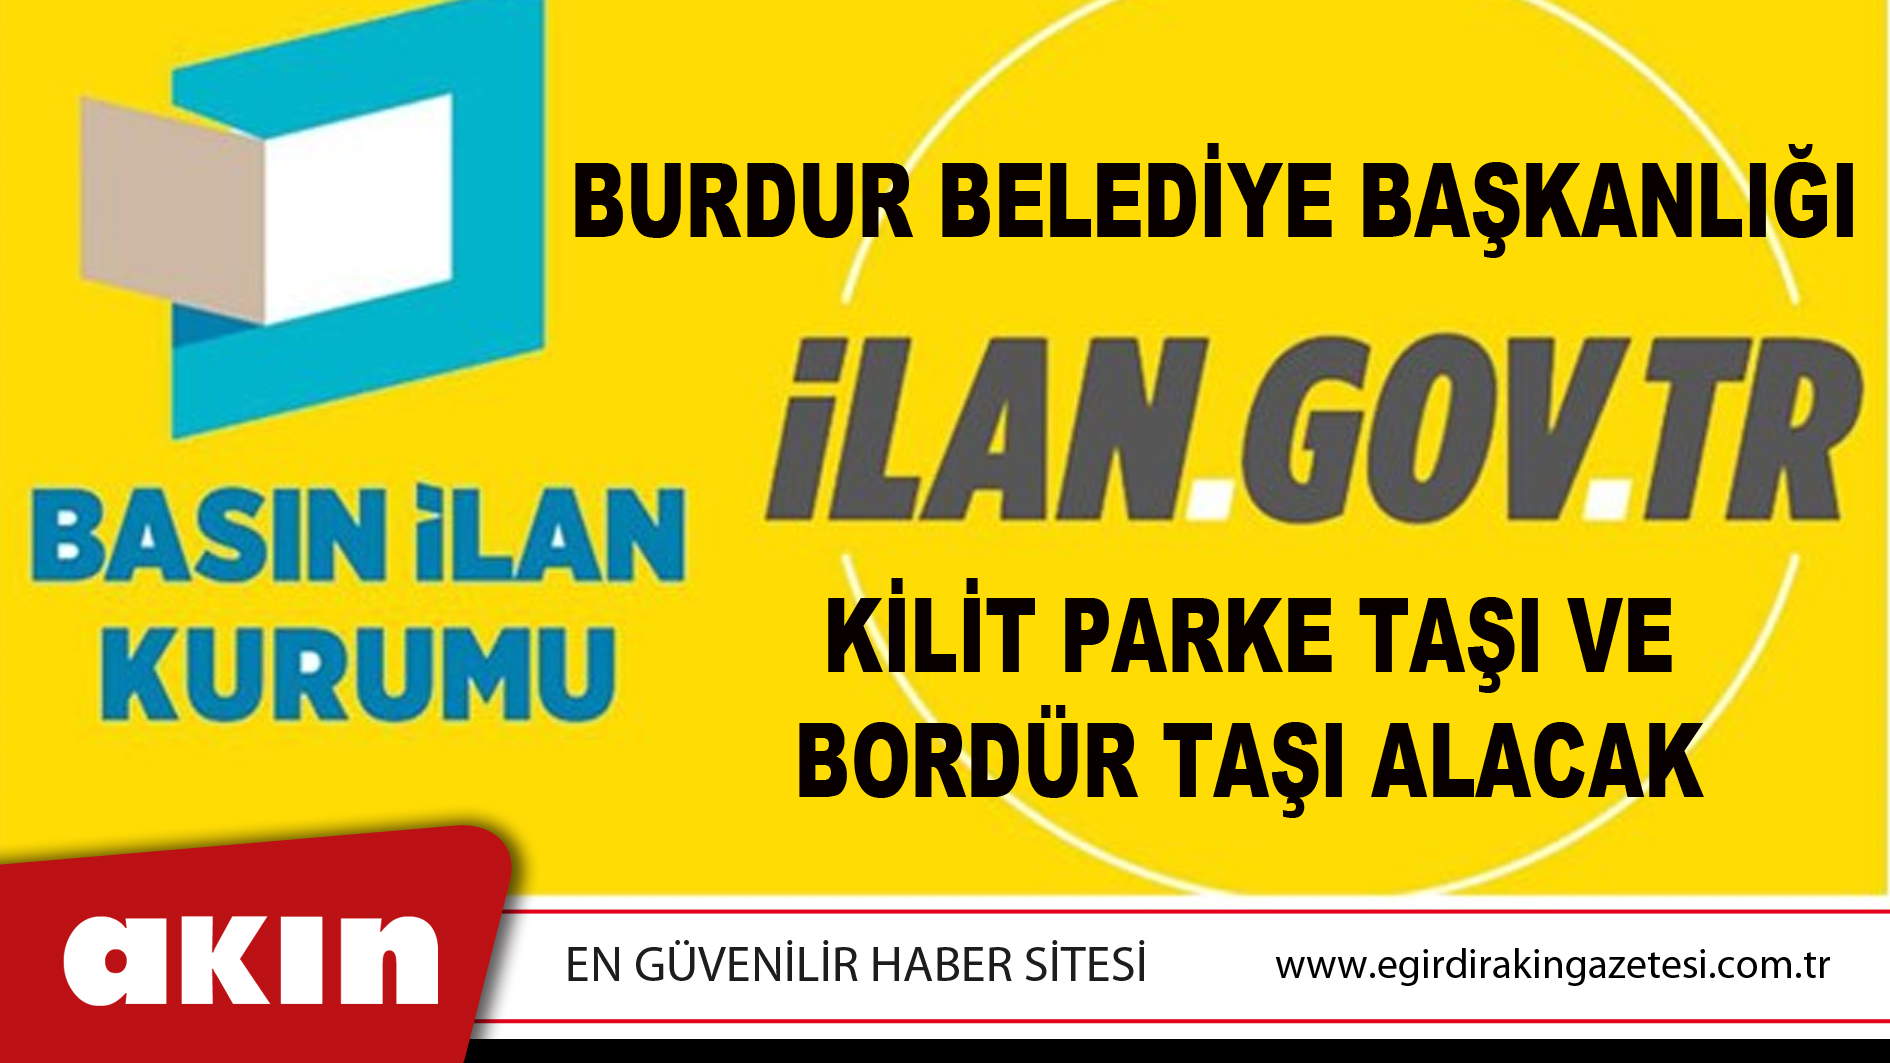 Burdur Belediye Başkanlığı Kilit Parke Taşı Ve Bordür Taşı Alacak